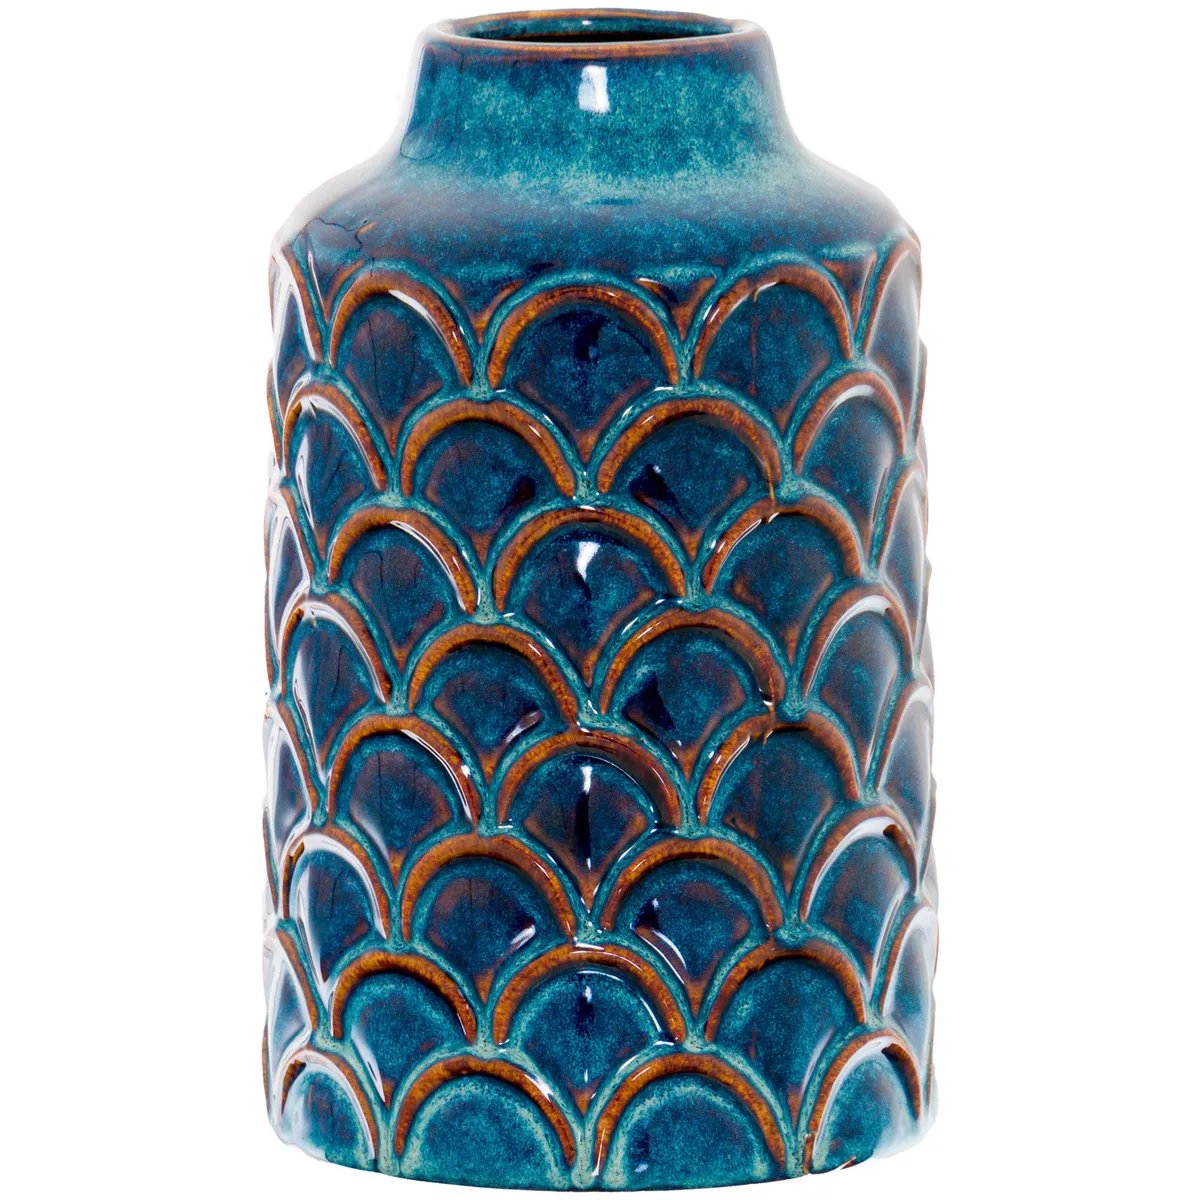 Albertson Ceramic Table Vase